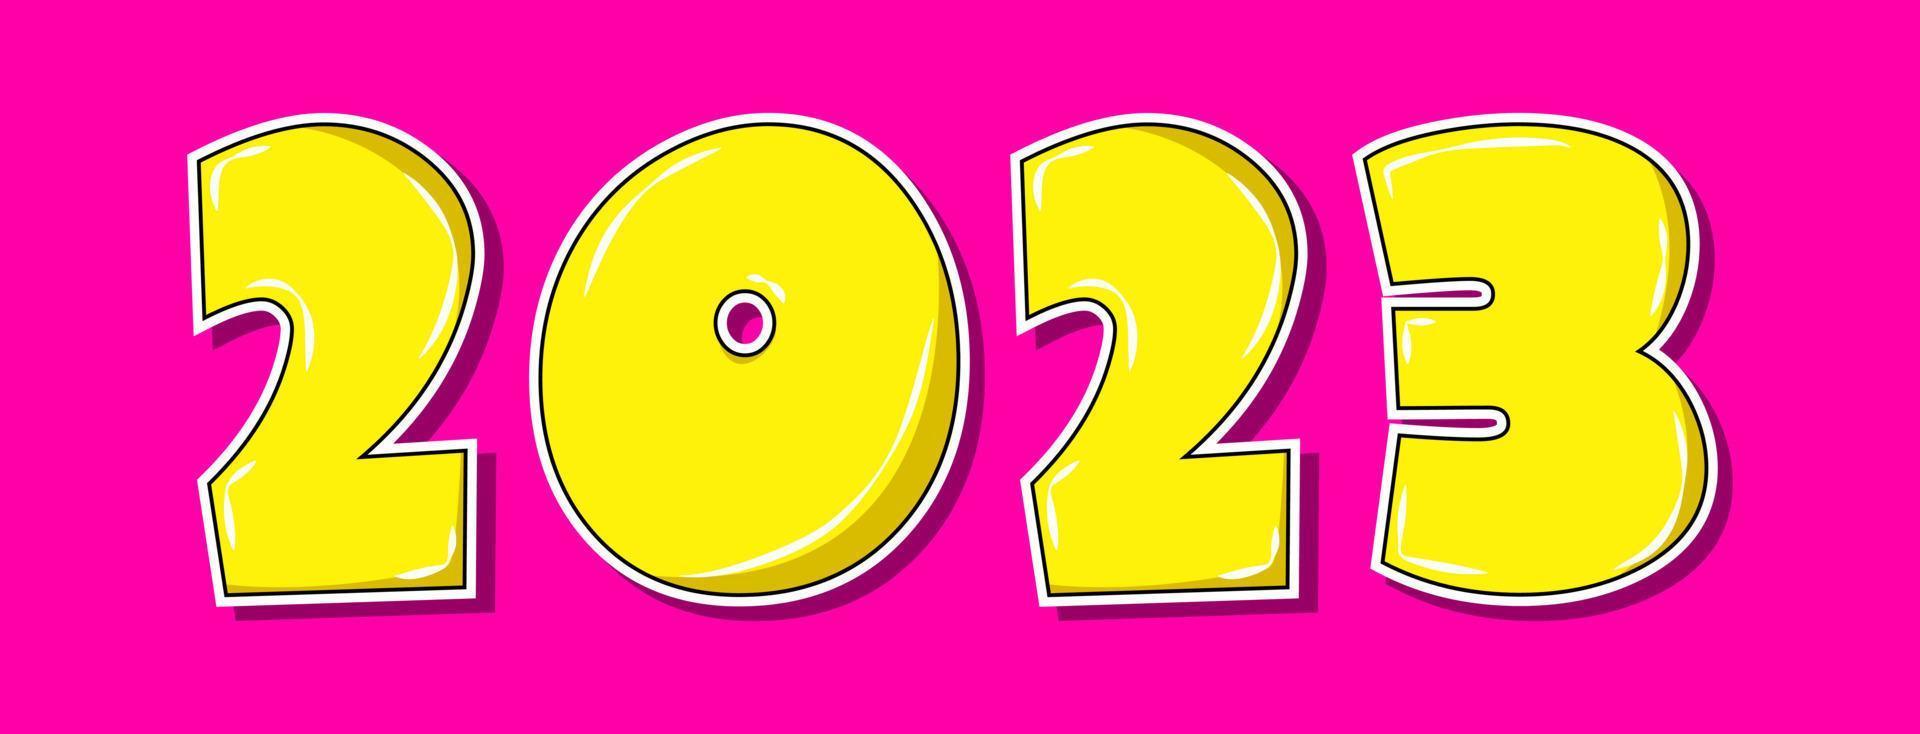 estilo pop art amarillo 2023 año sobre fondo rosa vector